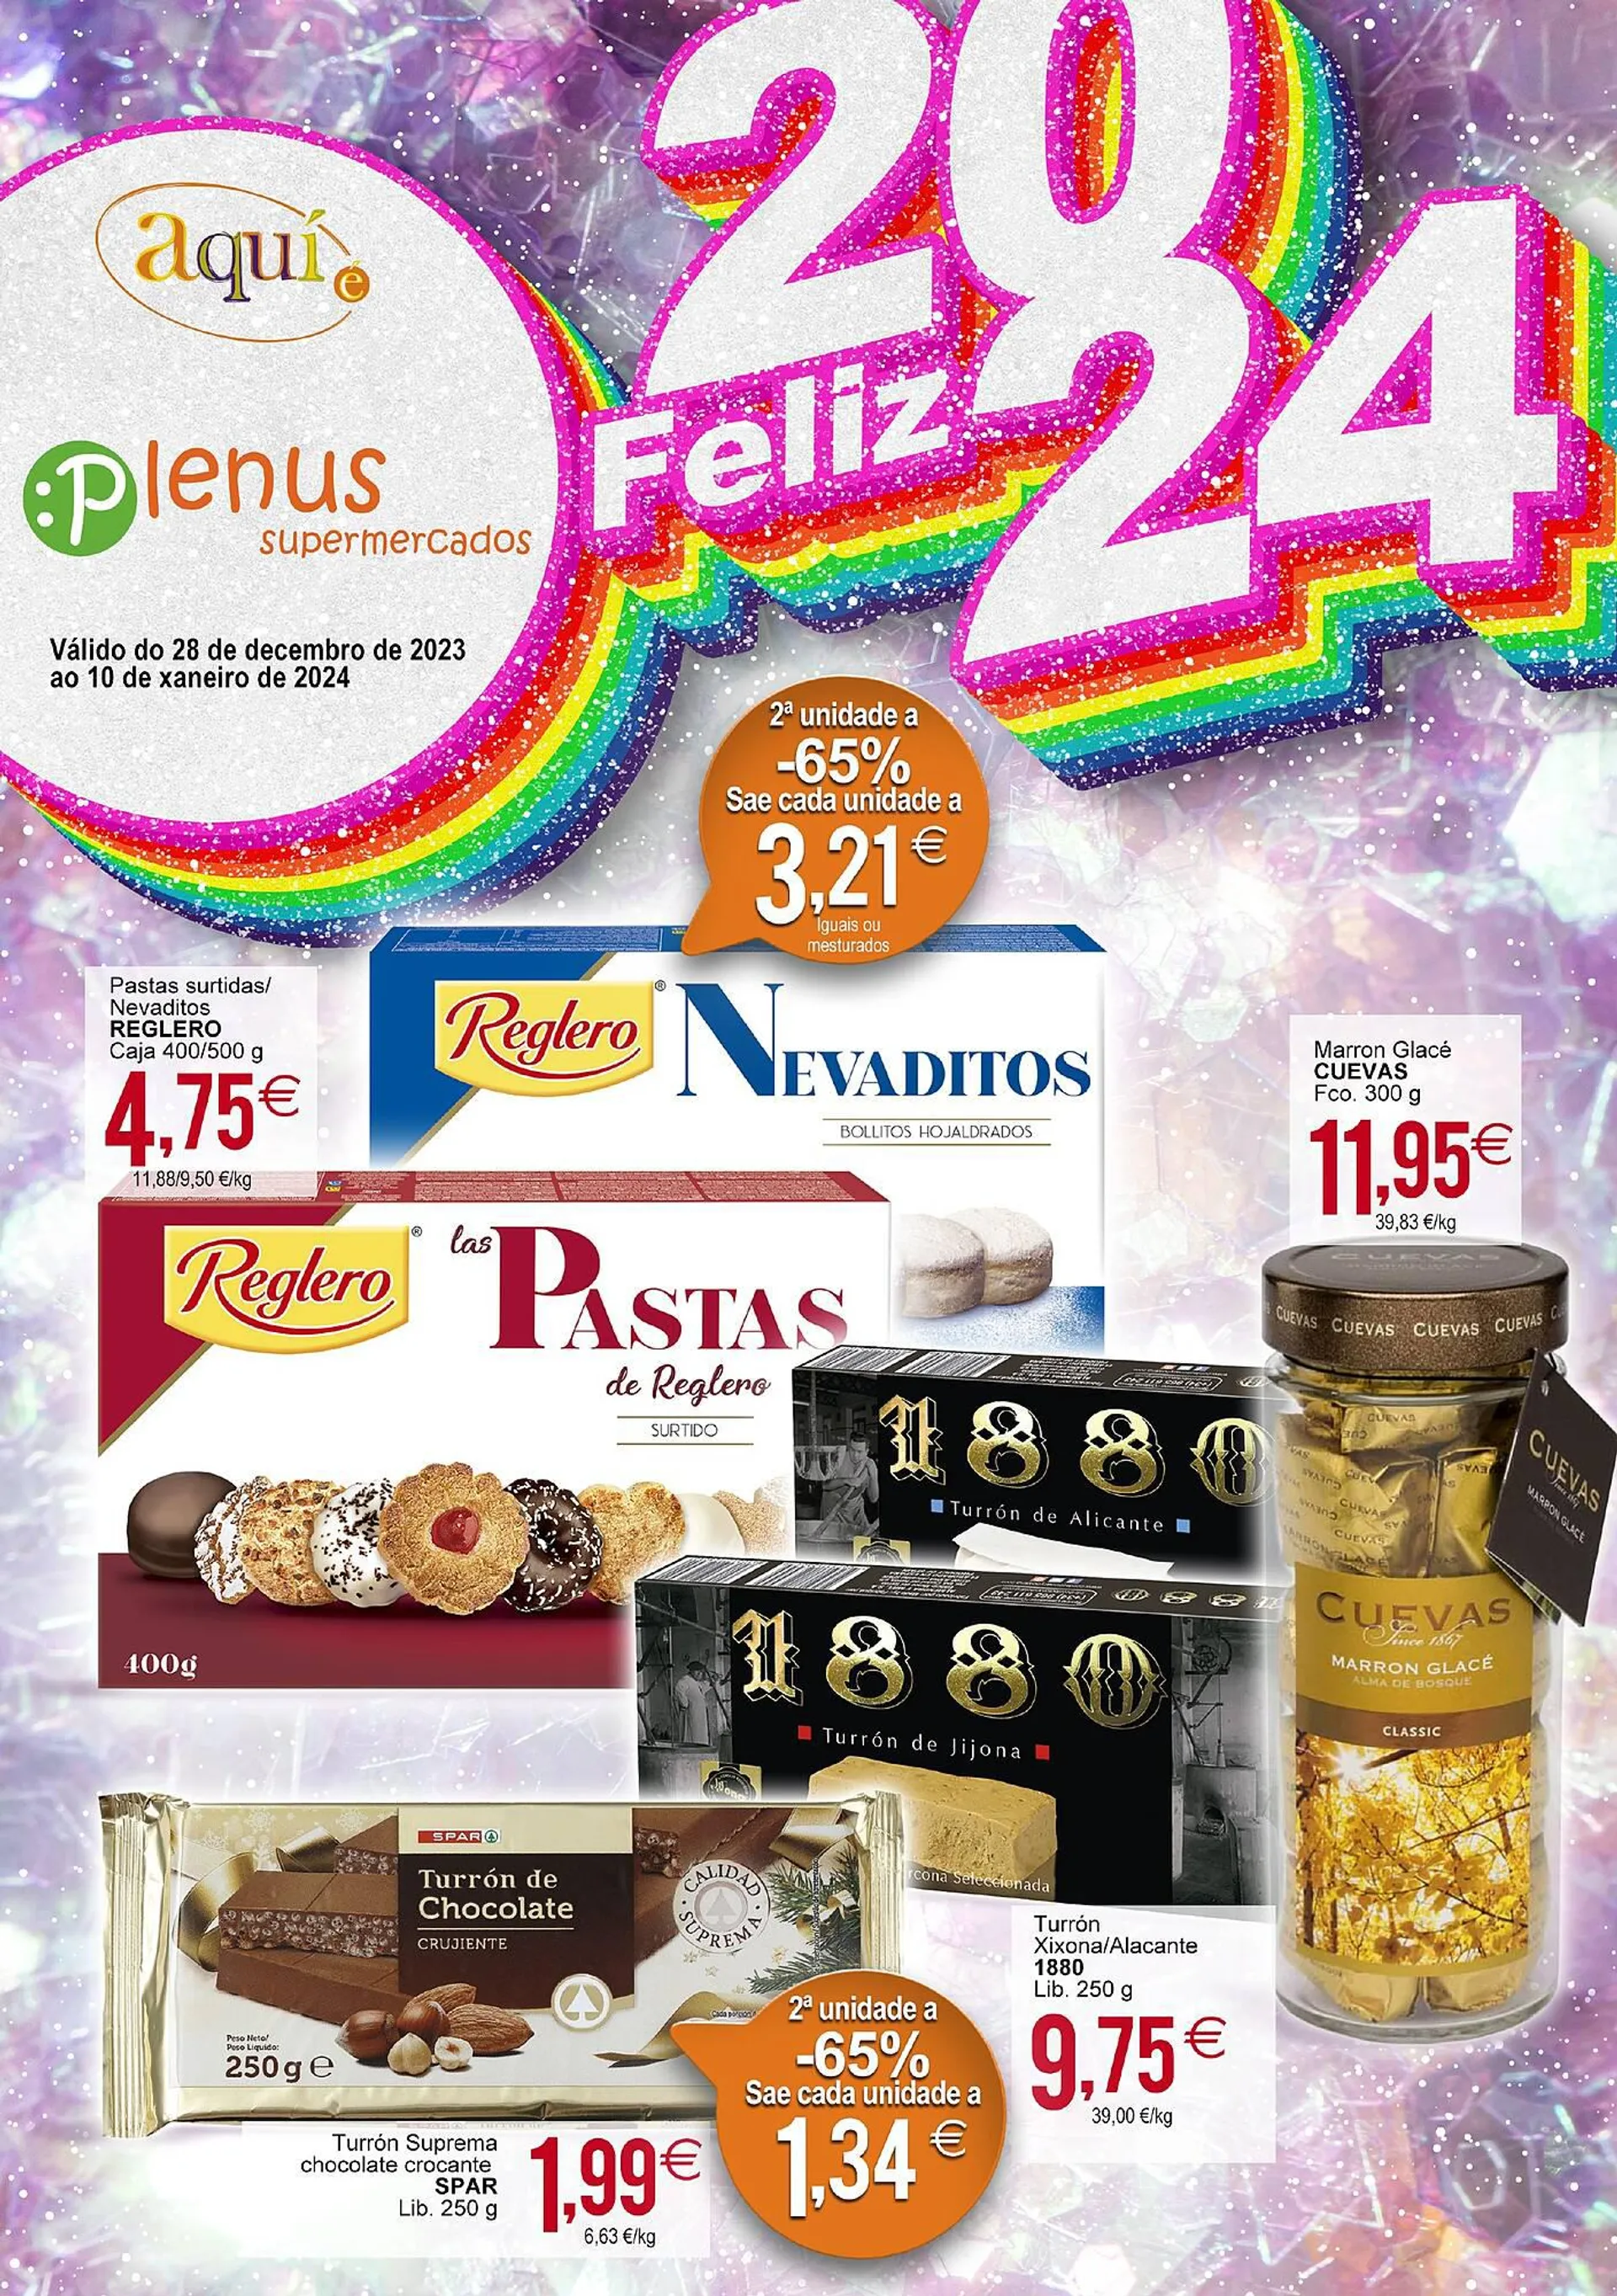 Catálogo de Folleto Plenus Supermercados 28 de diciembre al 10 de enero 2024 - Página 1